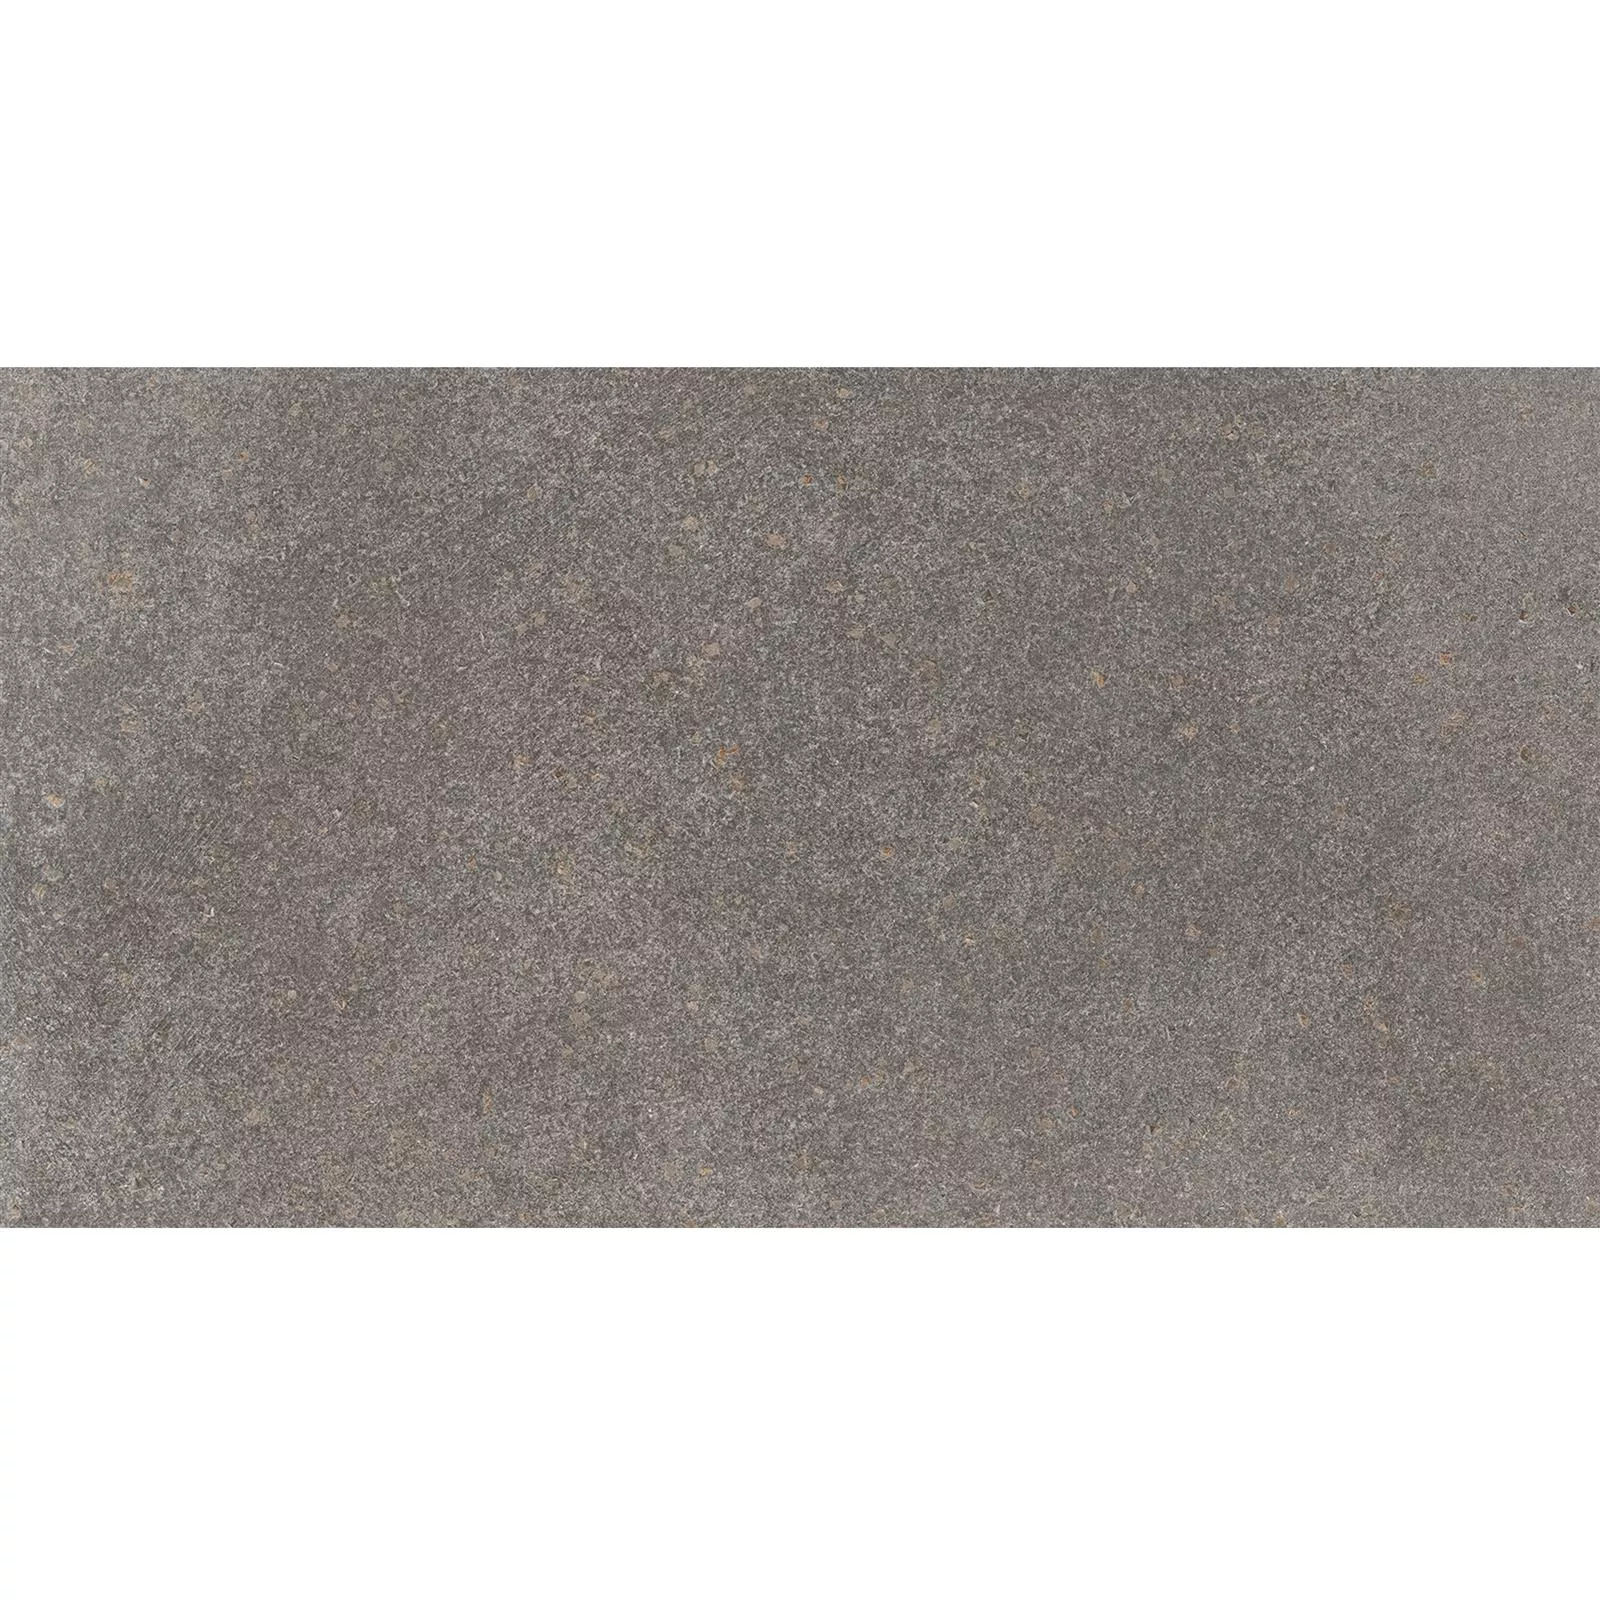 Πρότυπο Πλακάκια Δαπέδου Πέτρινη Όψη Horizon Kαφέ 30x60cm